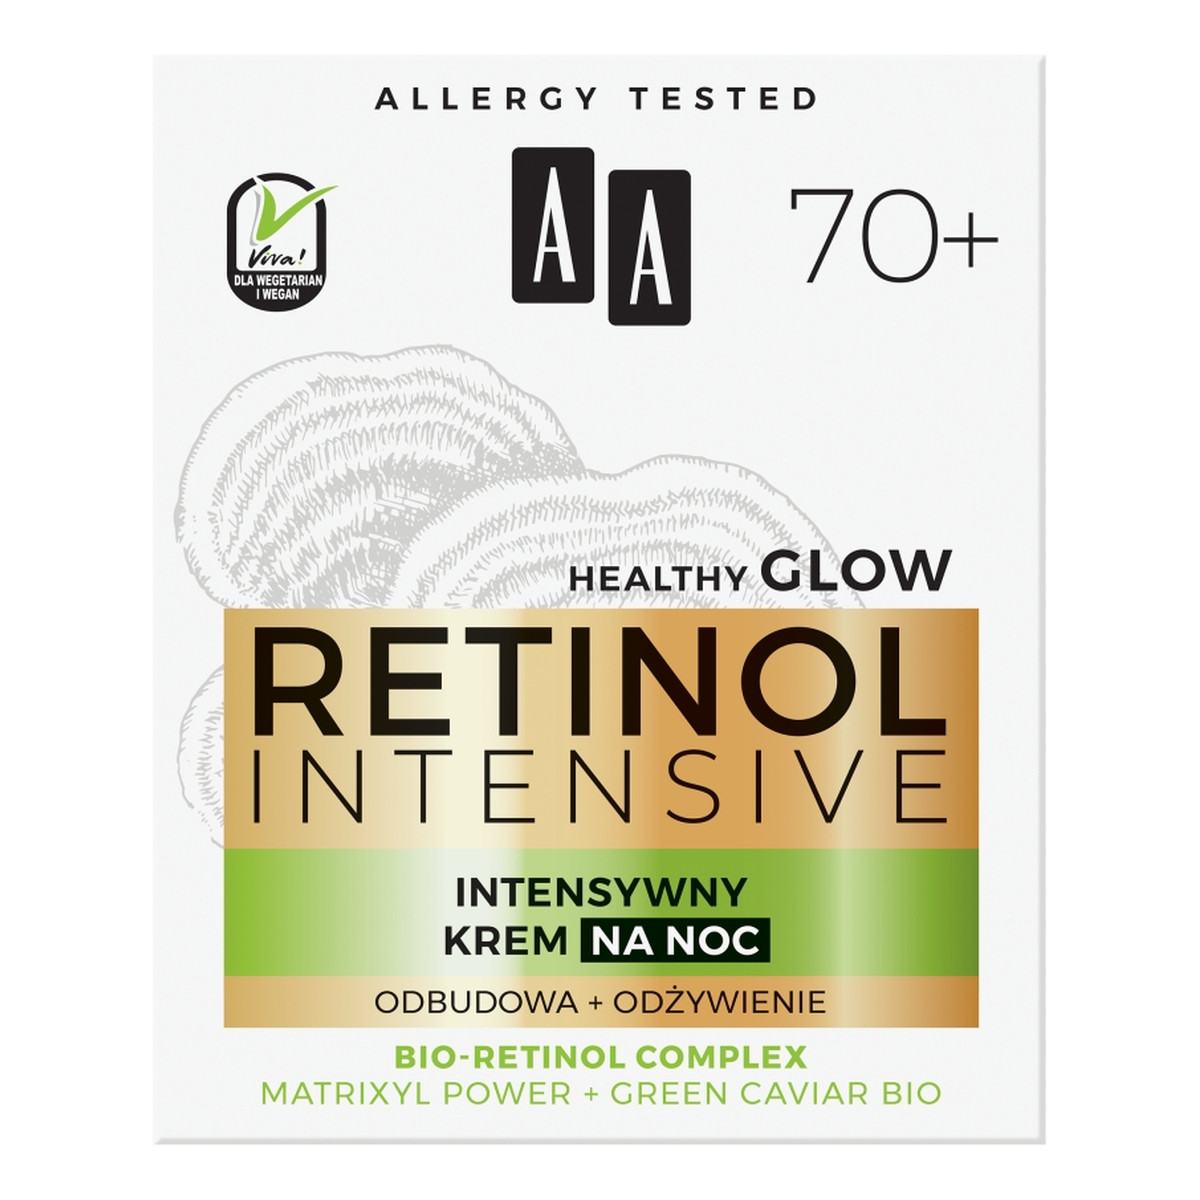 AA Retinol Intensive 70+ intensywny krem na noc Odbudowa + Odżywienie Matrixyl Power & Green Caviar Bio 50ml